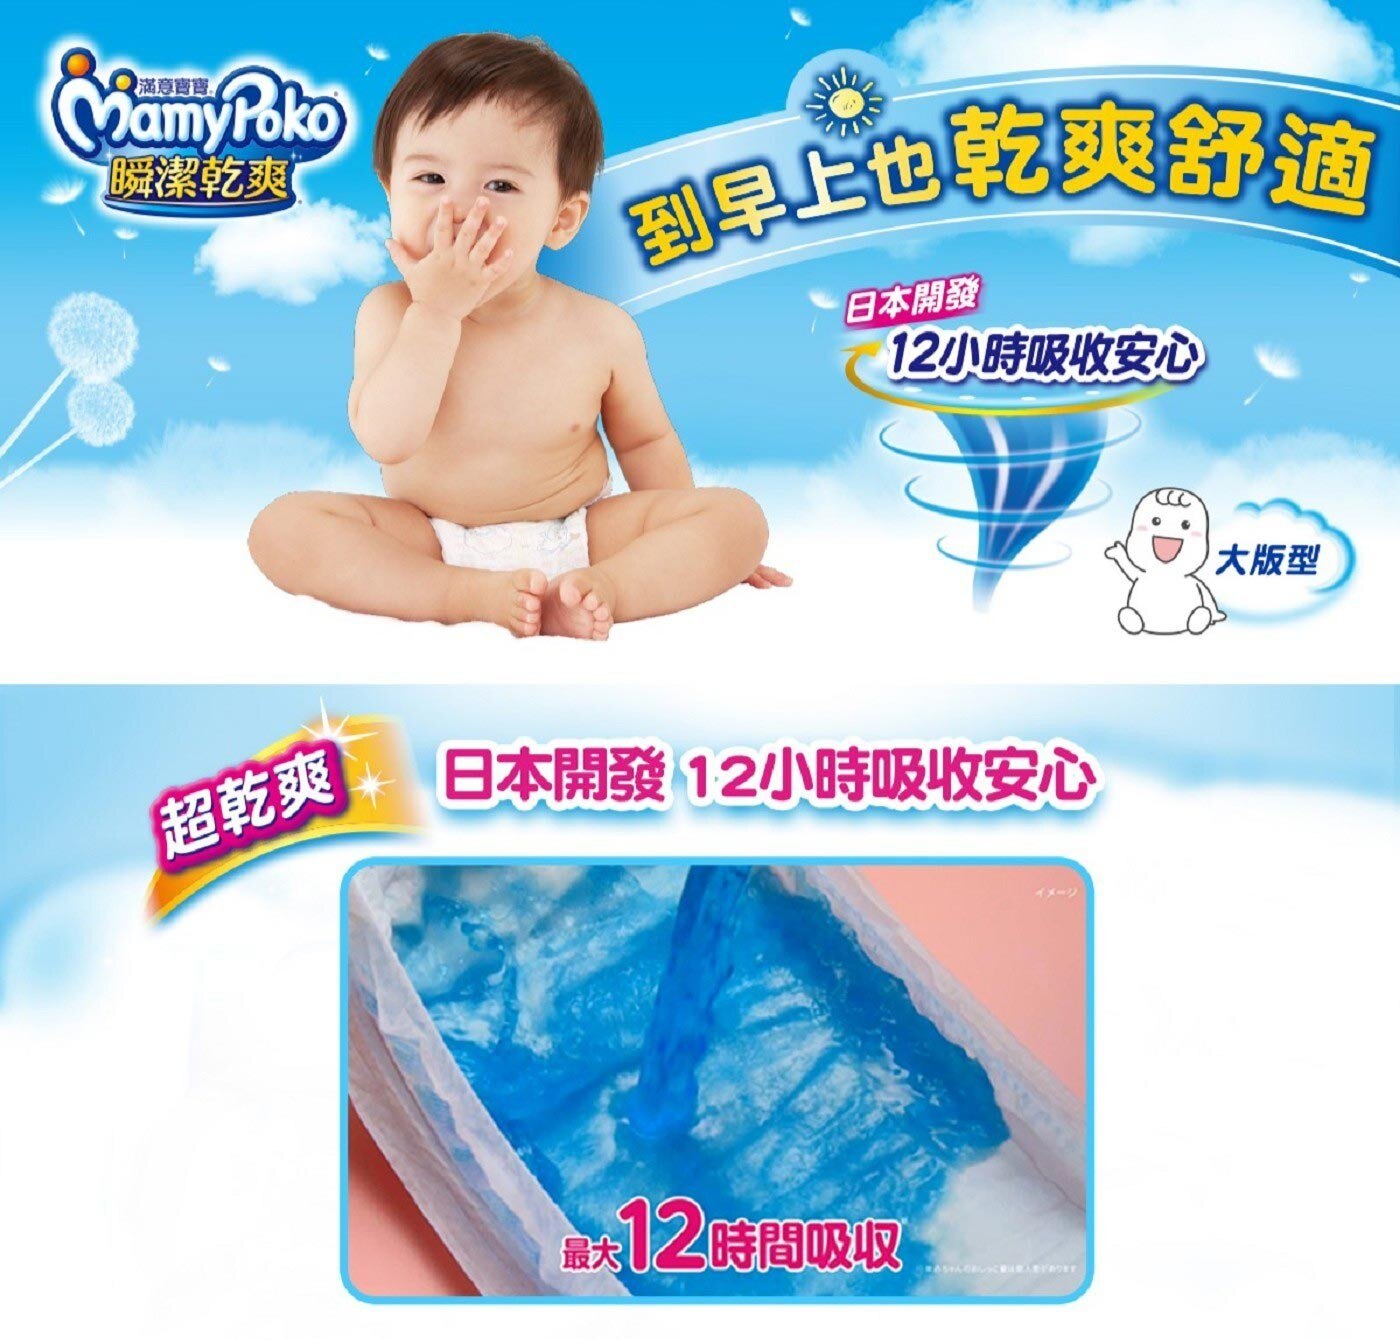 滿意寶寶 瞬潔乾爽紙尿褲 XL號 126片 全新升級日本開發菱格導流技術，瞬間均勻分散，整晚尿量鎖在底層，一早醒來尿布不大大一包，3D呼吸透氣層防悶熱，讓寶寶整晚乾爽舒適。3D呼吸透氣層防悶熱，讓寶寶整晚乾爽舒適，媽媽好評推薦。